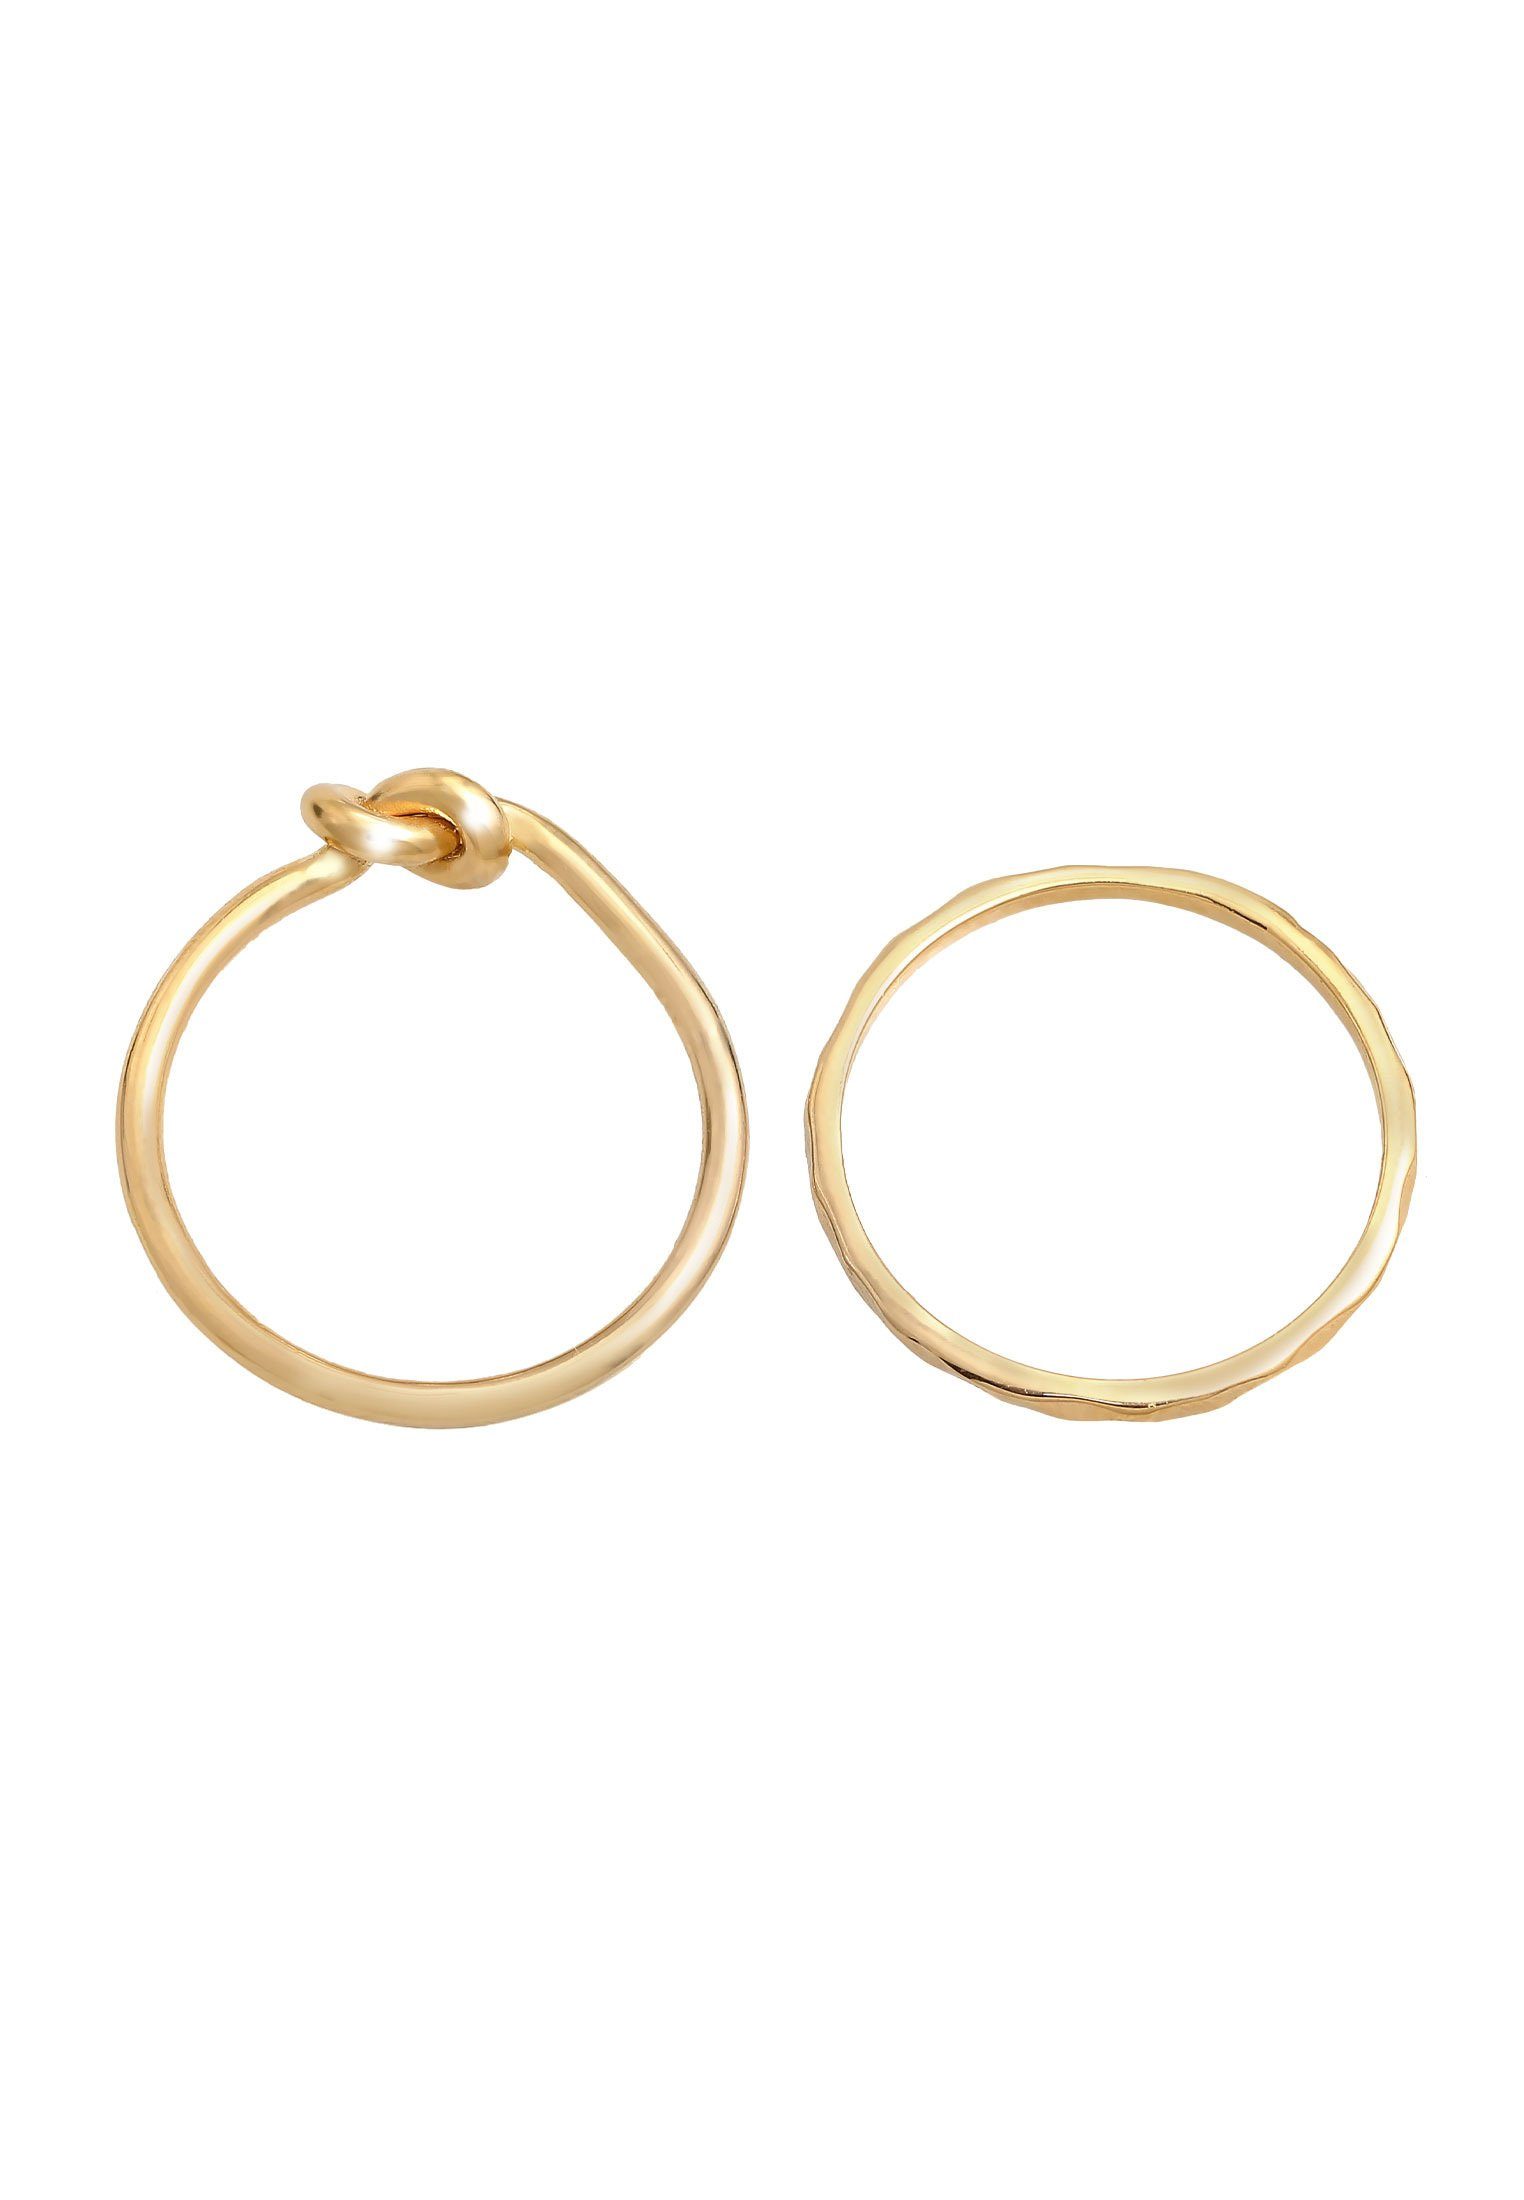 Knoten Knoten Gold Elli Basic Silber, 2er Trend Ring-Set 925 Verknotet Set